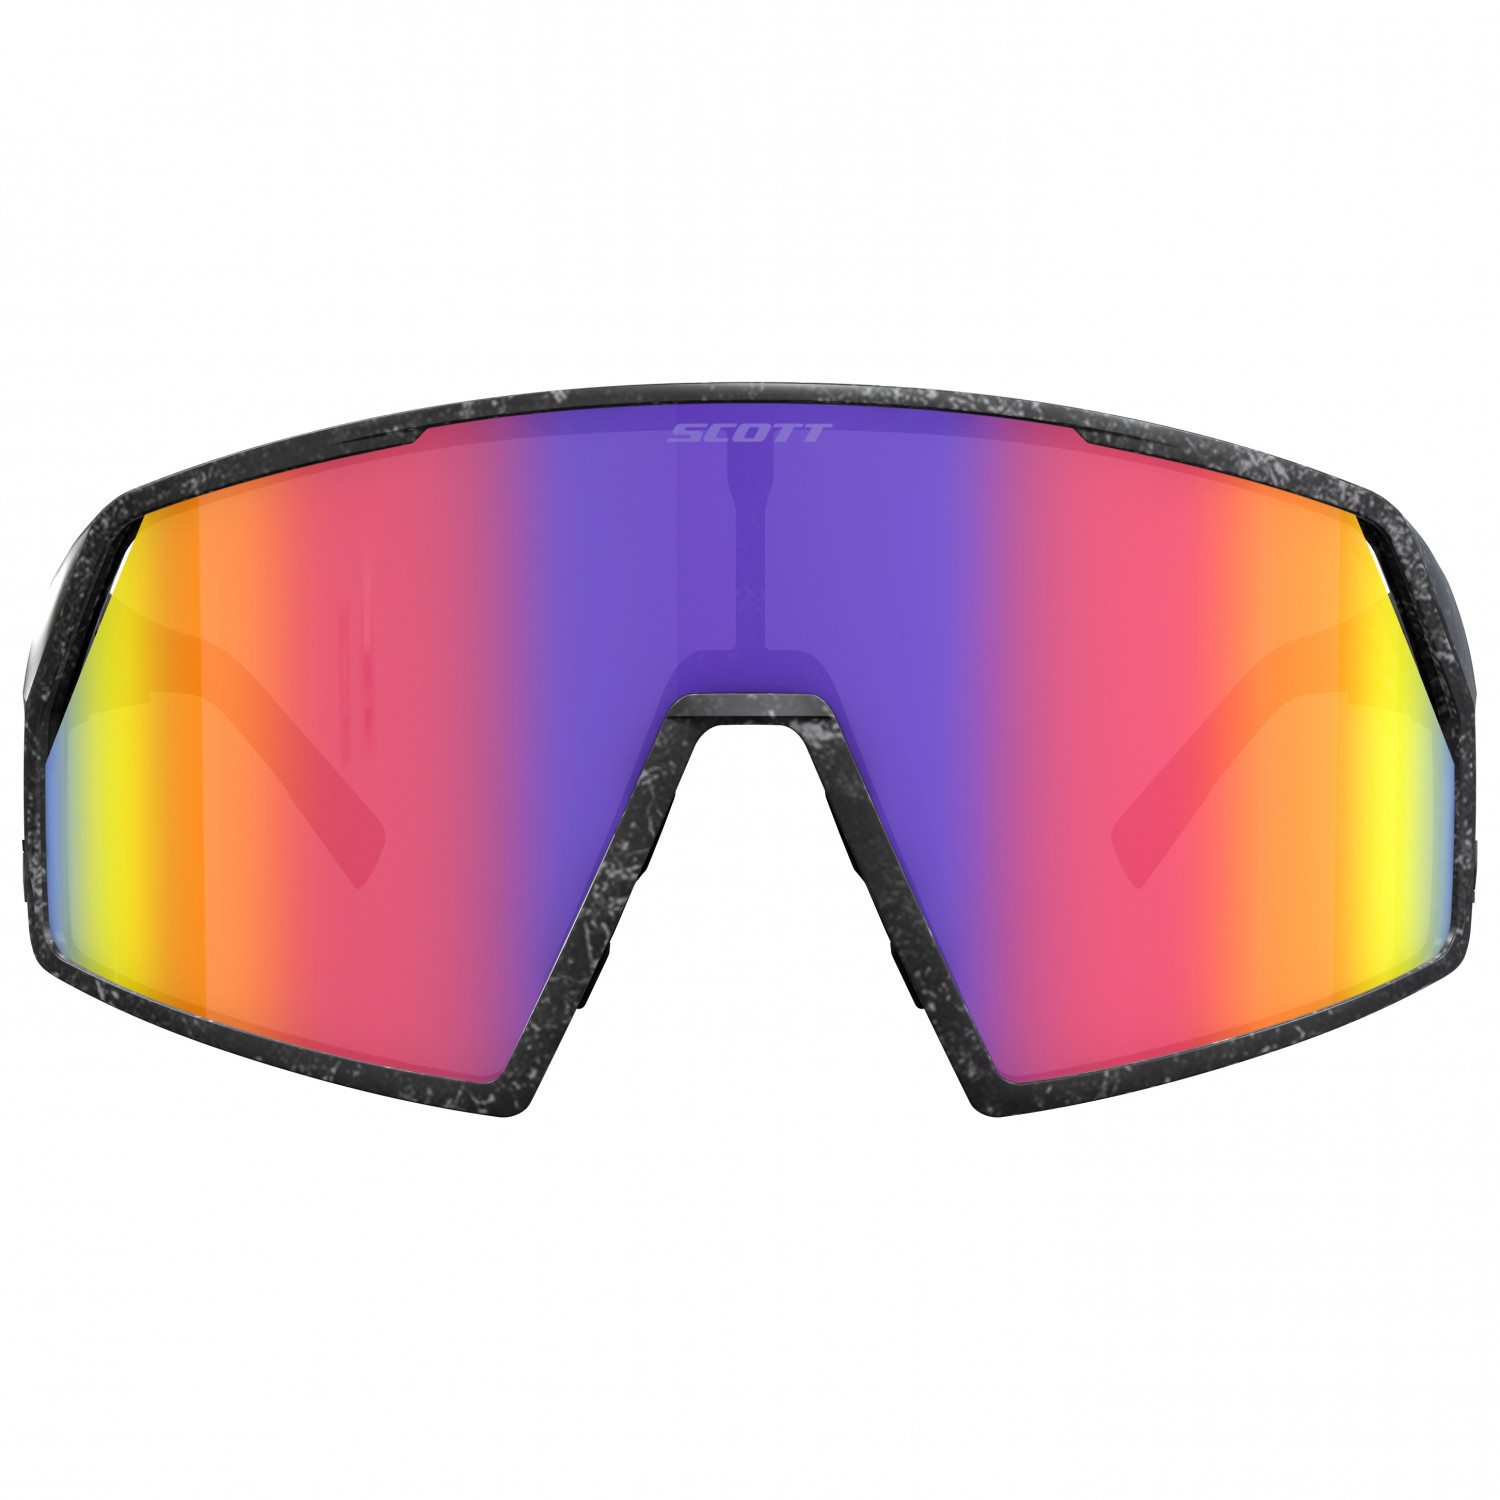 Велосипедные очки Scott Pro Shield S3 (VLT 16%), цвет Marble Black